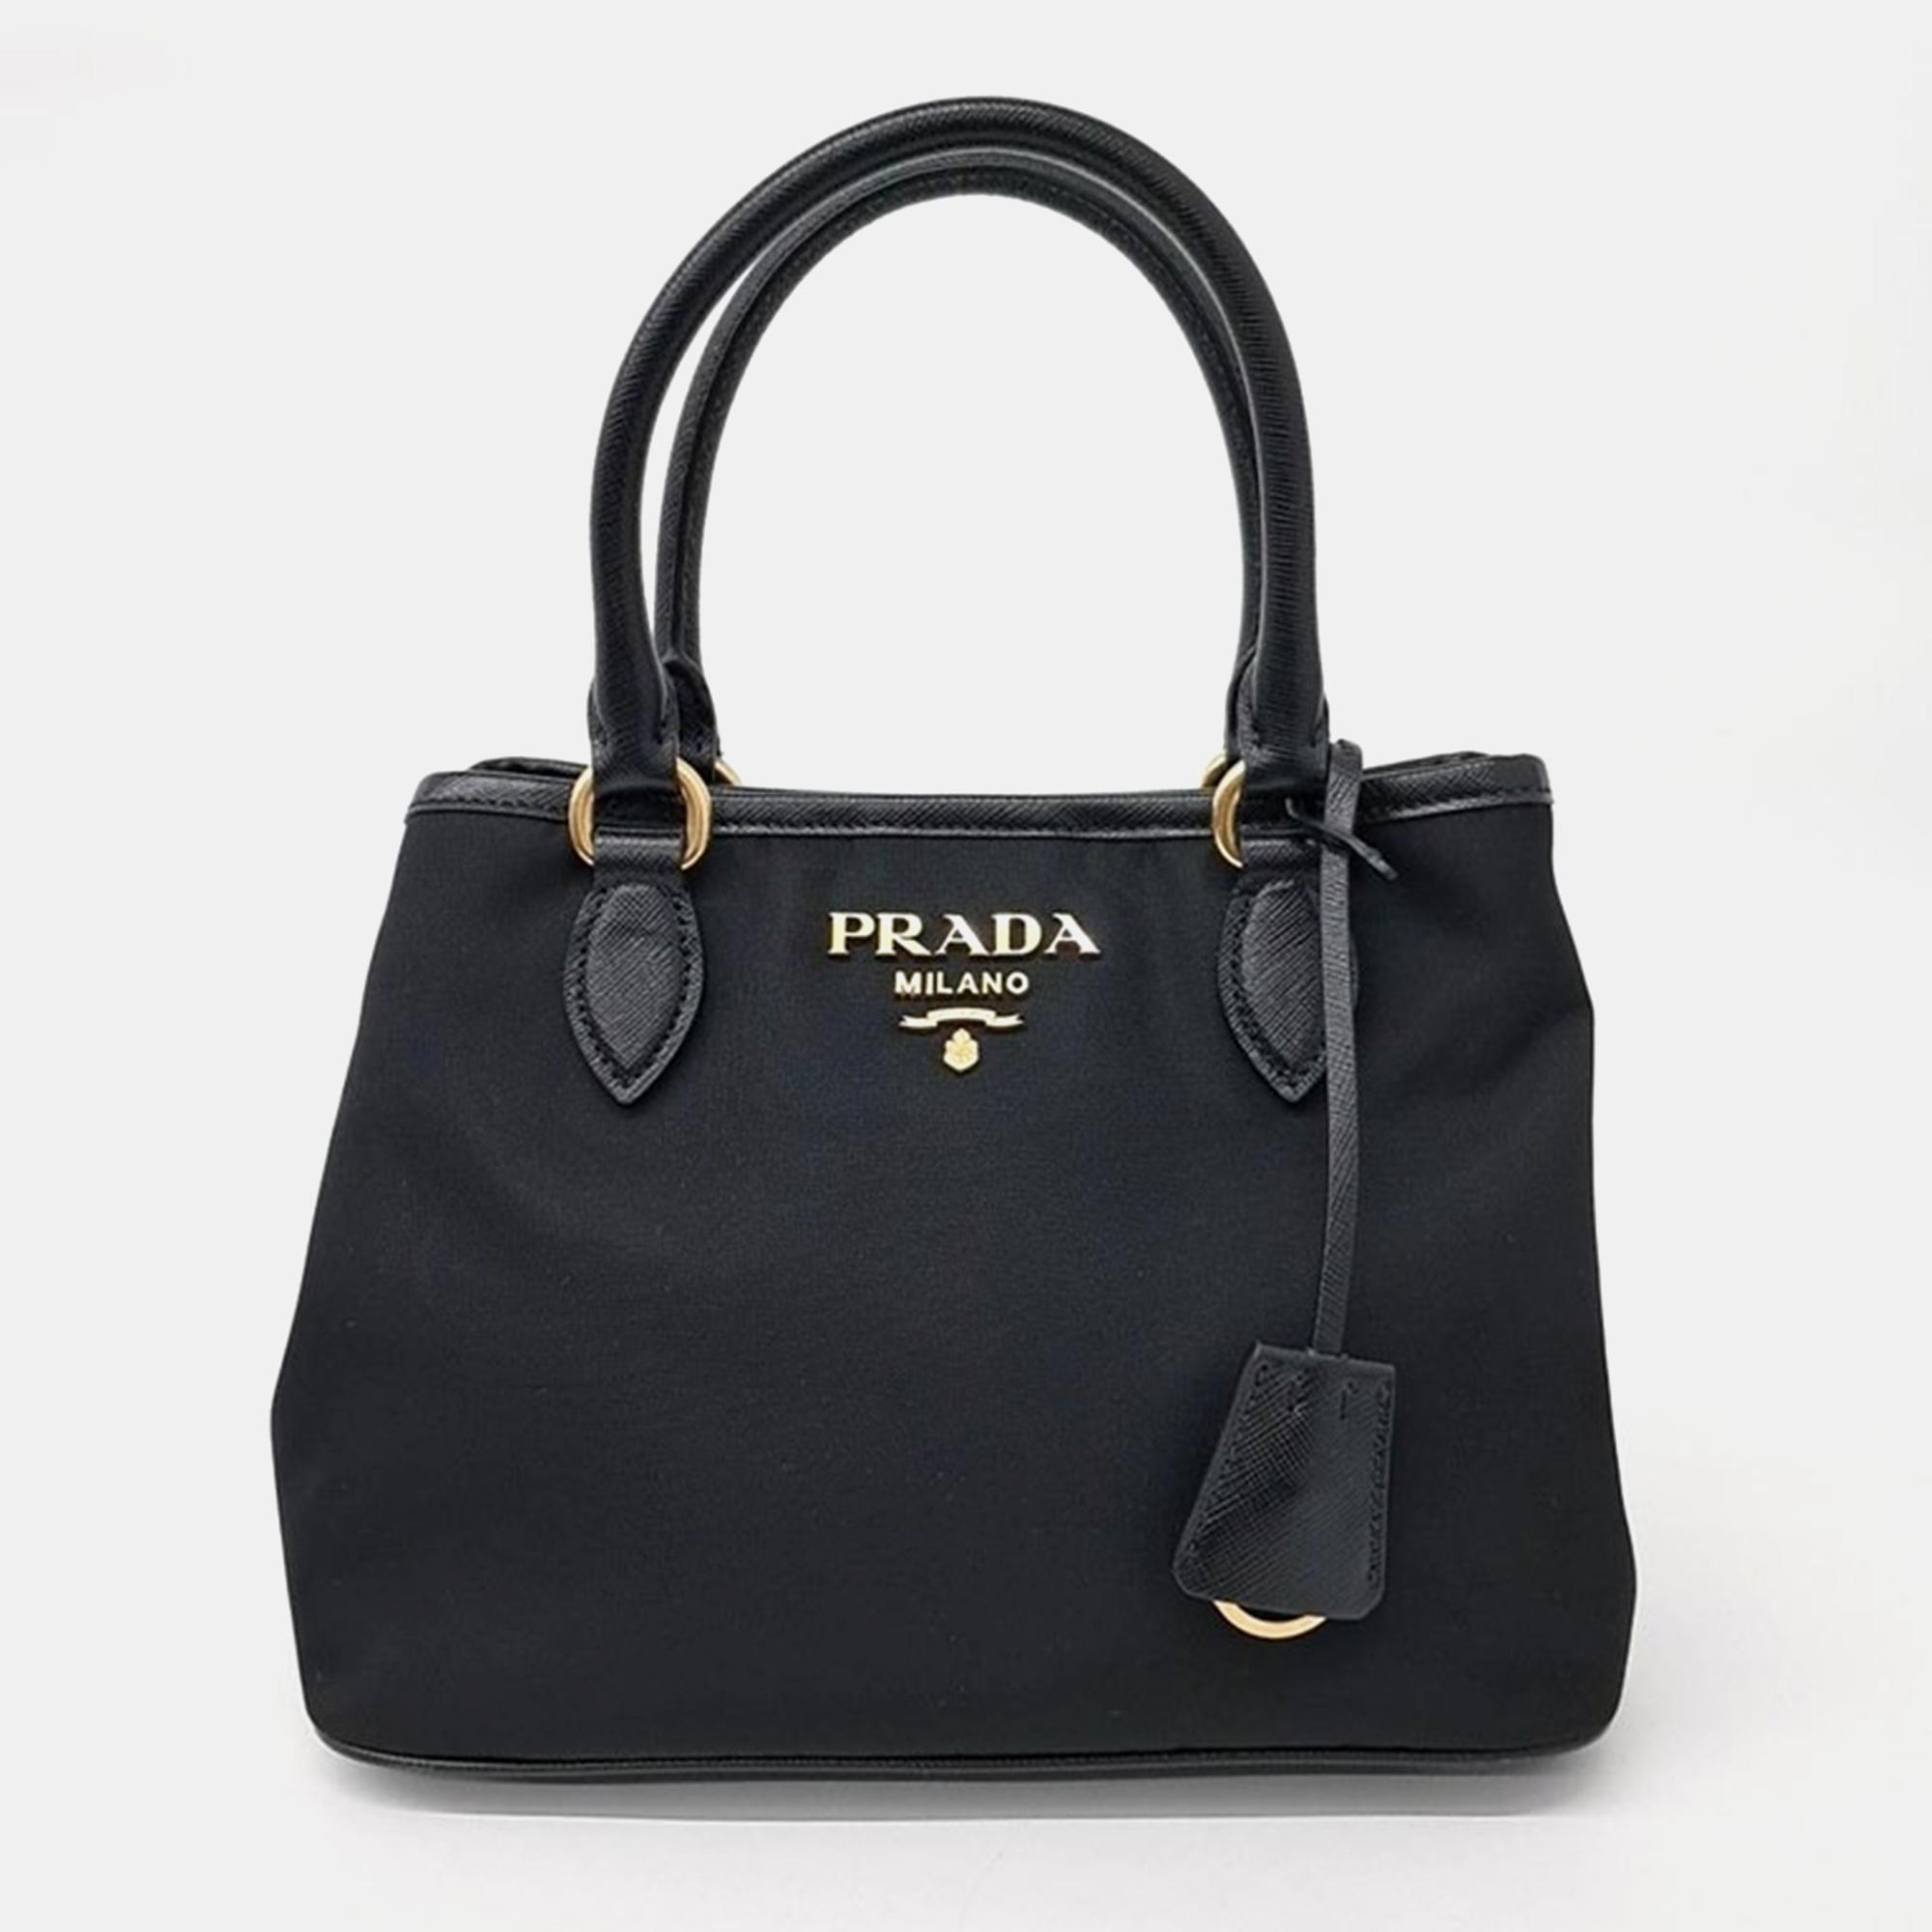 

Prada Tote And Shoulder Bag, Black